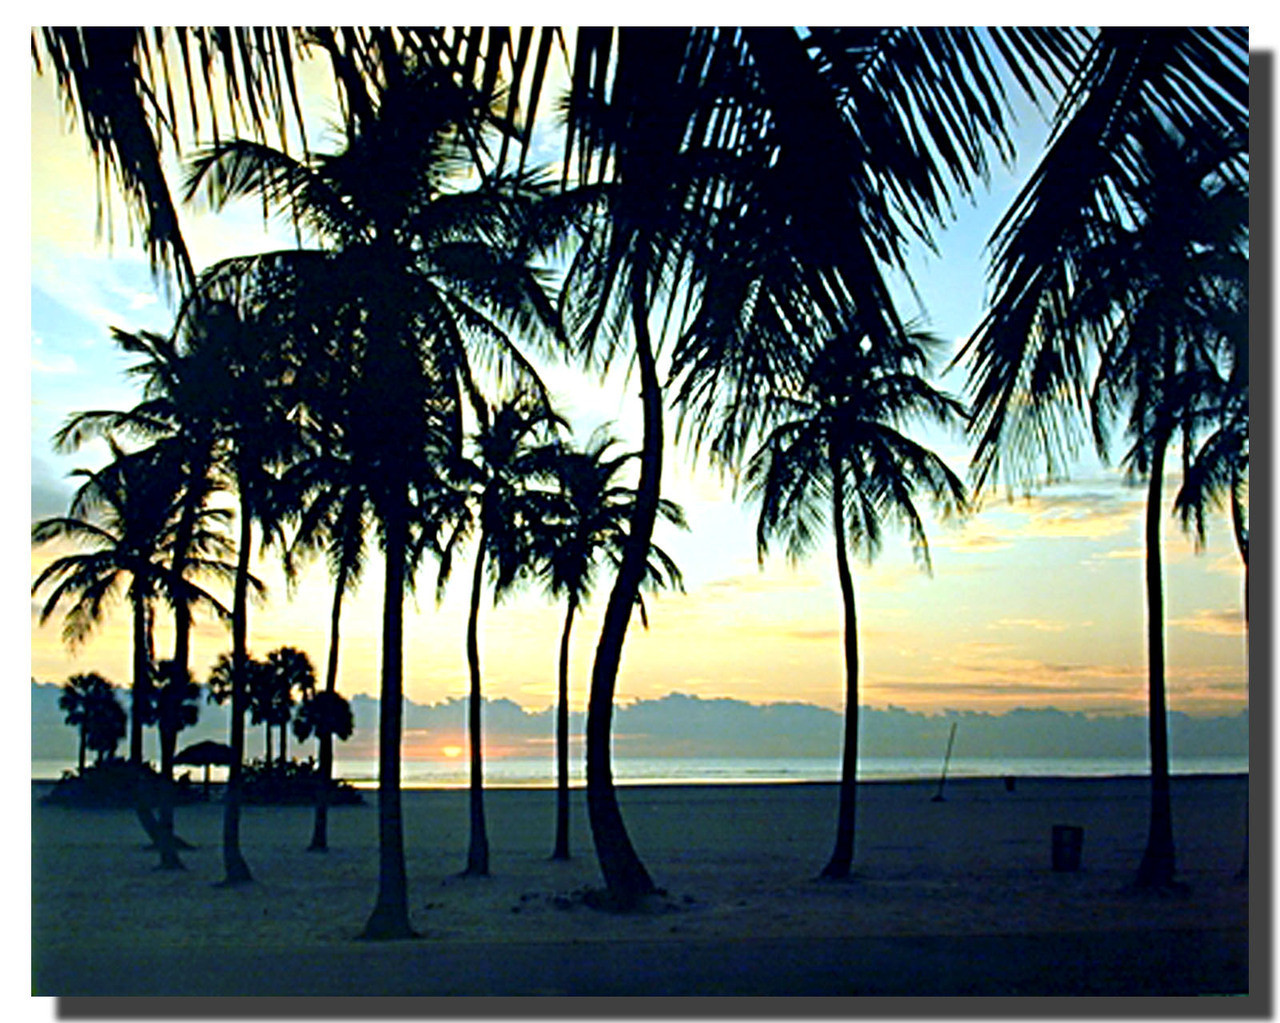 beautiful beach sunsets palm trees